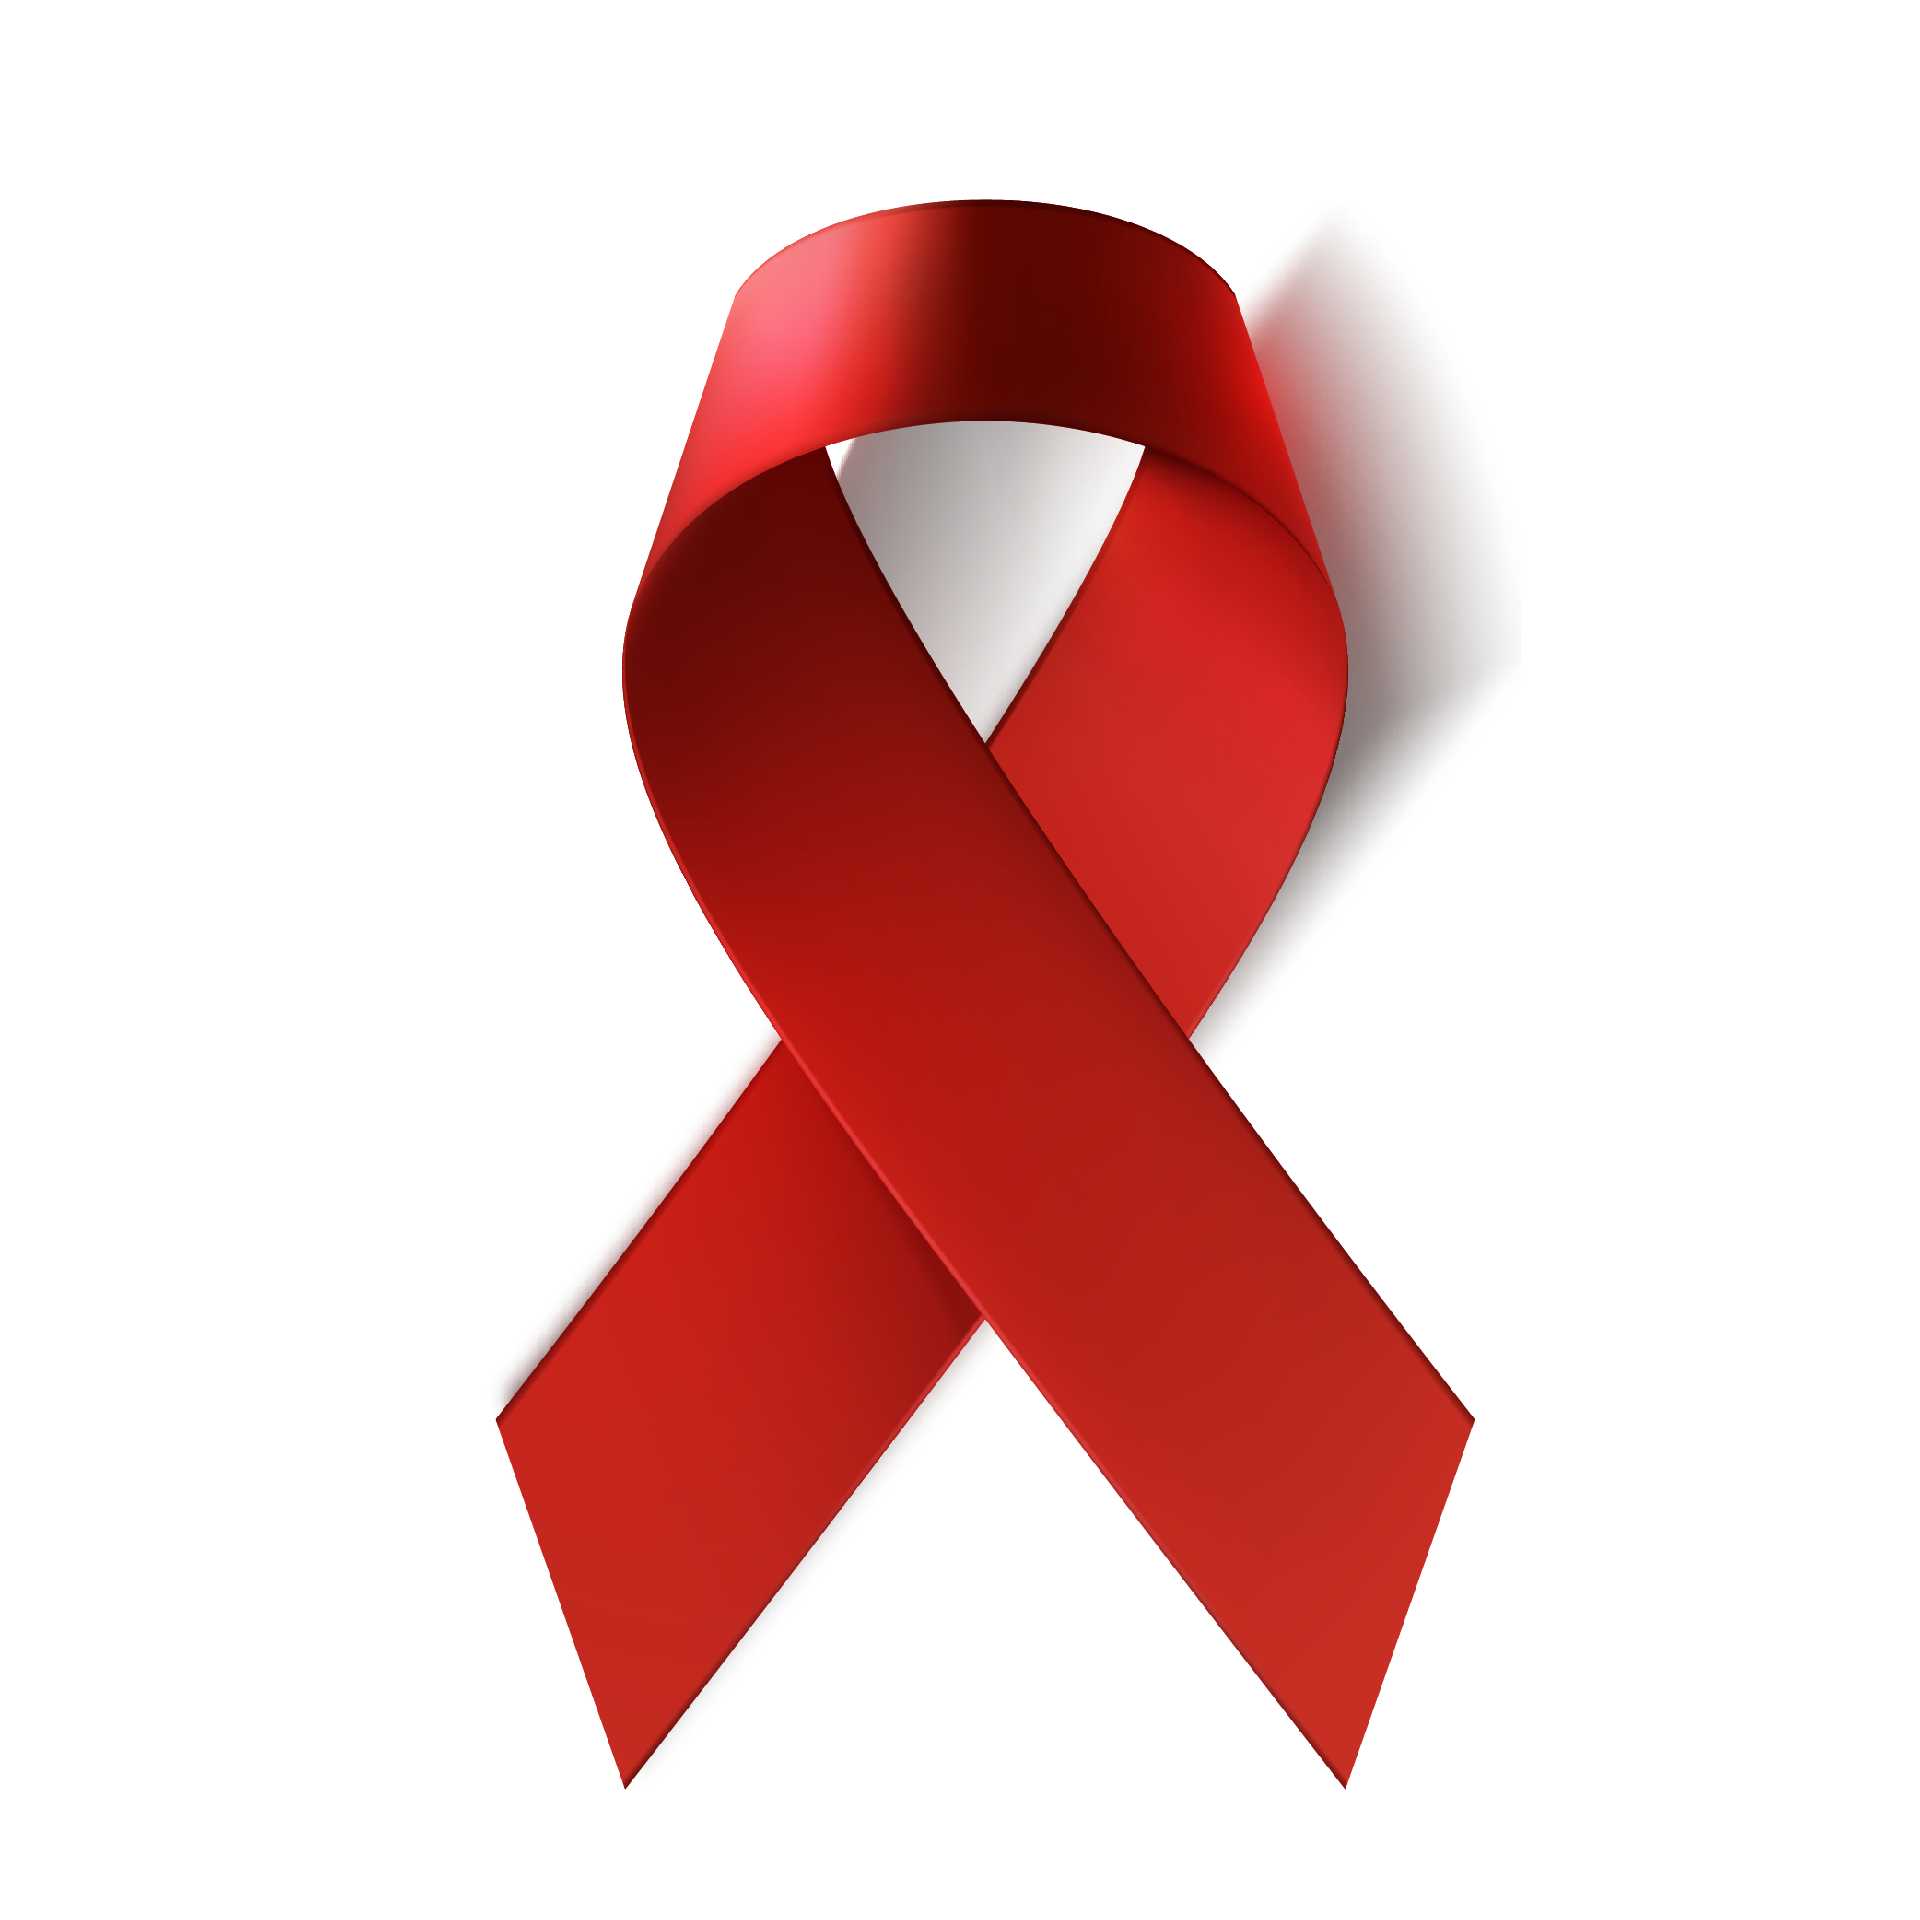 1 грудня - Всесвітній день боротьби з ВІЛ/СНІДом